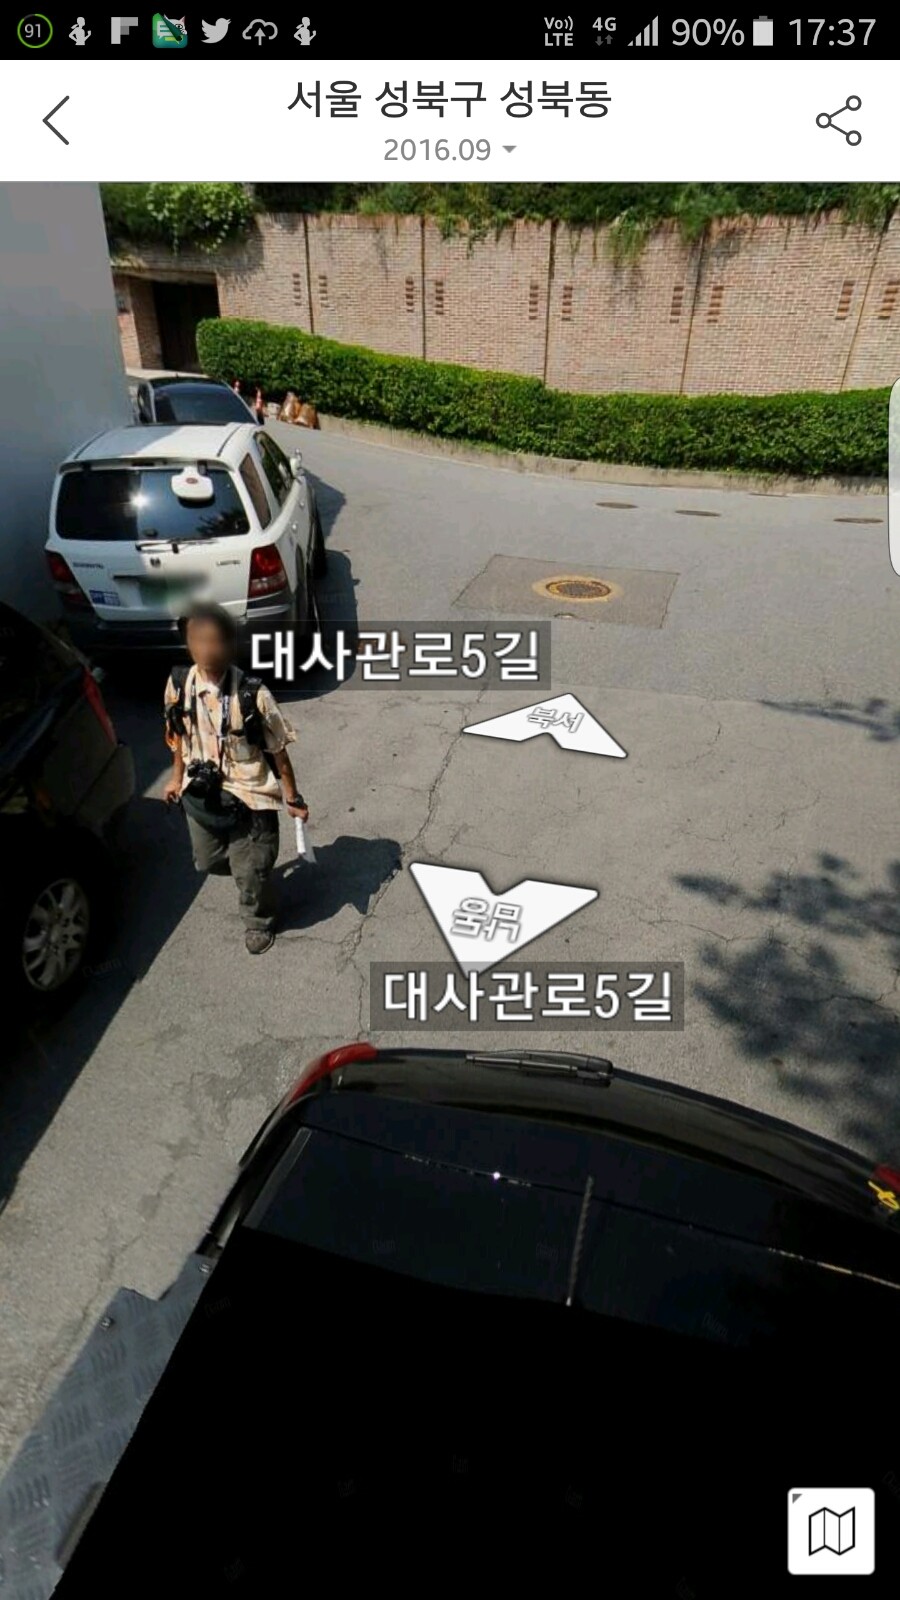 16 初秋 韓国一人旅 ストリートビューに写ってた 知らない街でプチ迷子